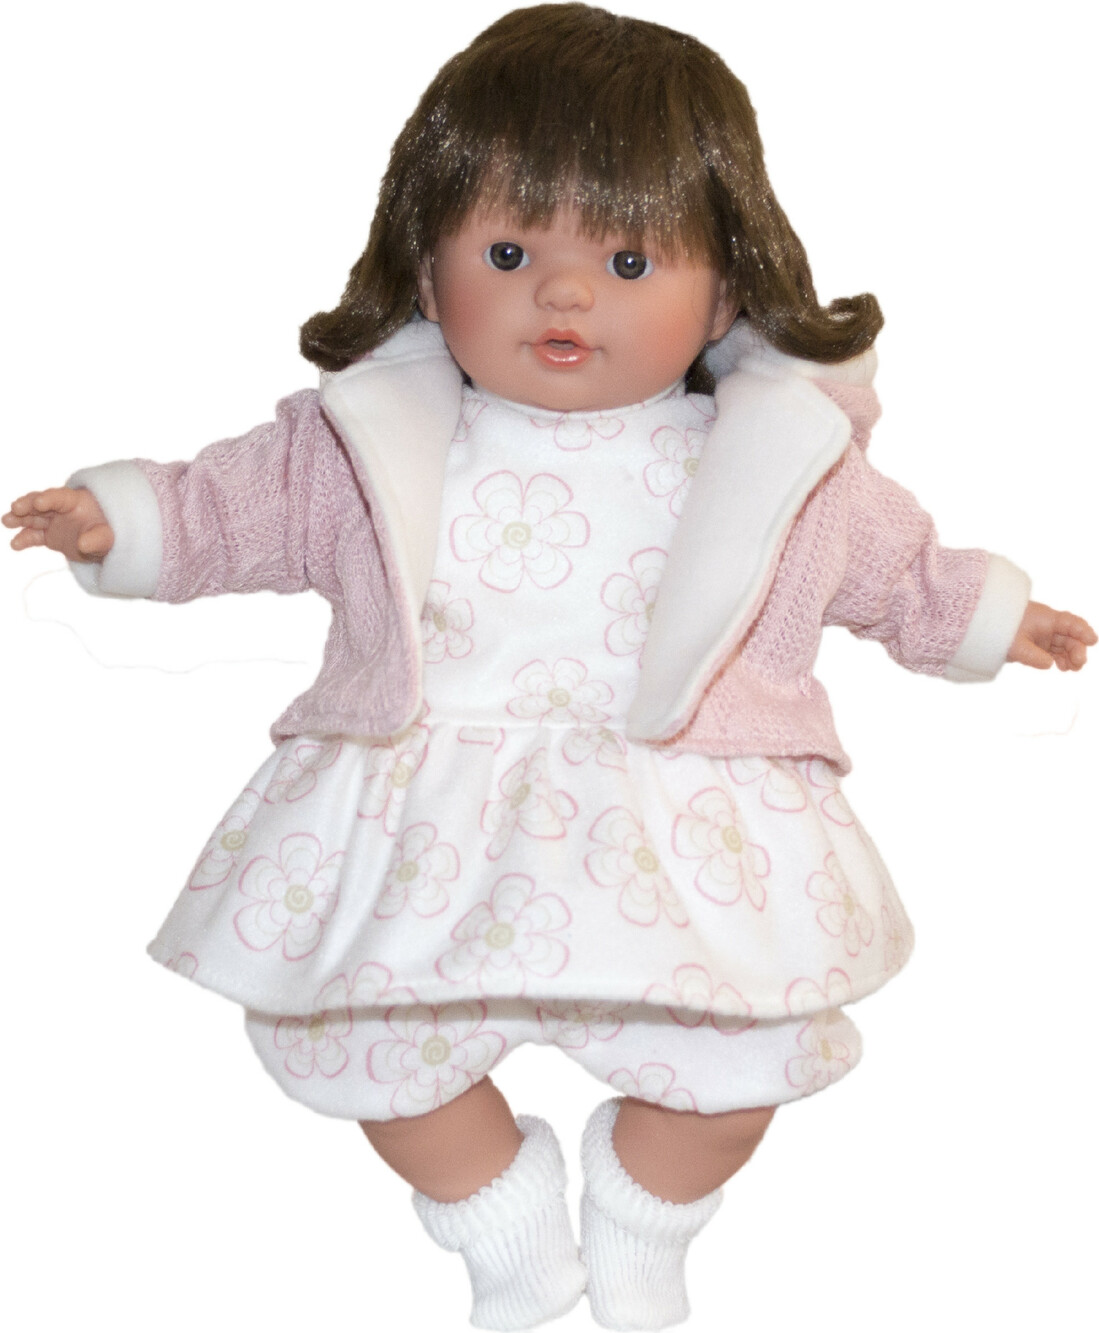 TYBER Anna hnědovláska plačící panenka s dudlíkem, vel. S 38 cm